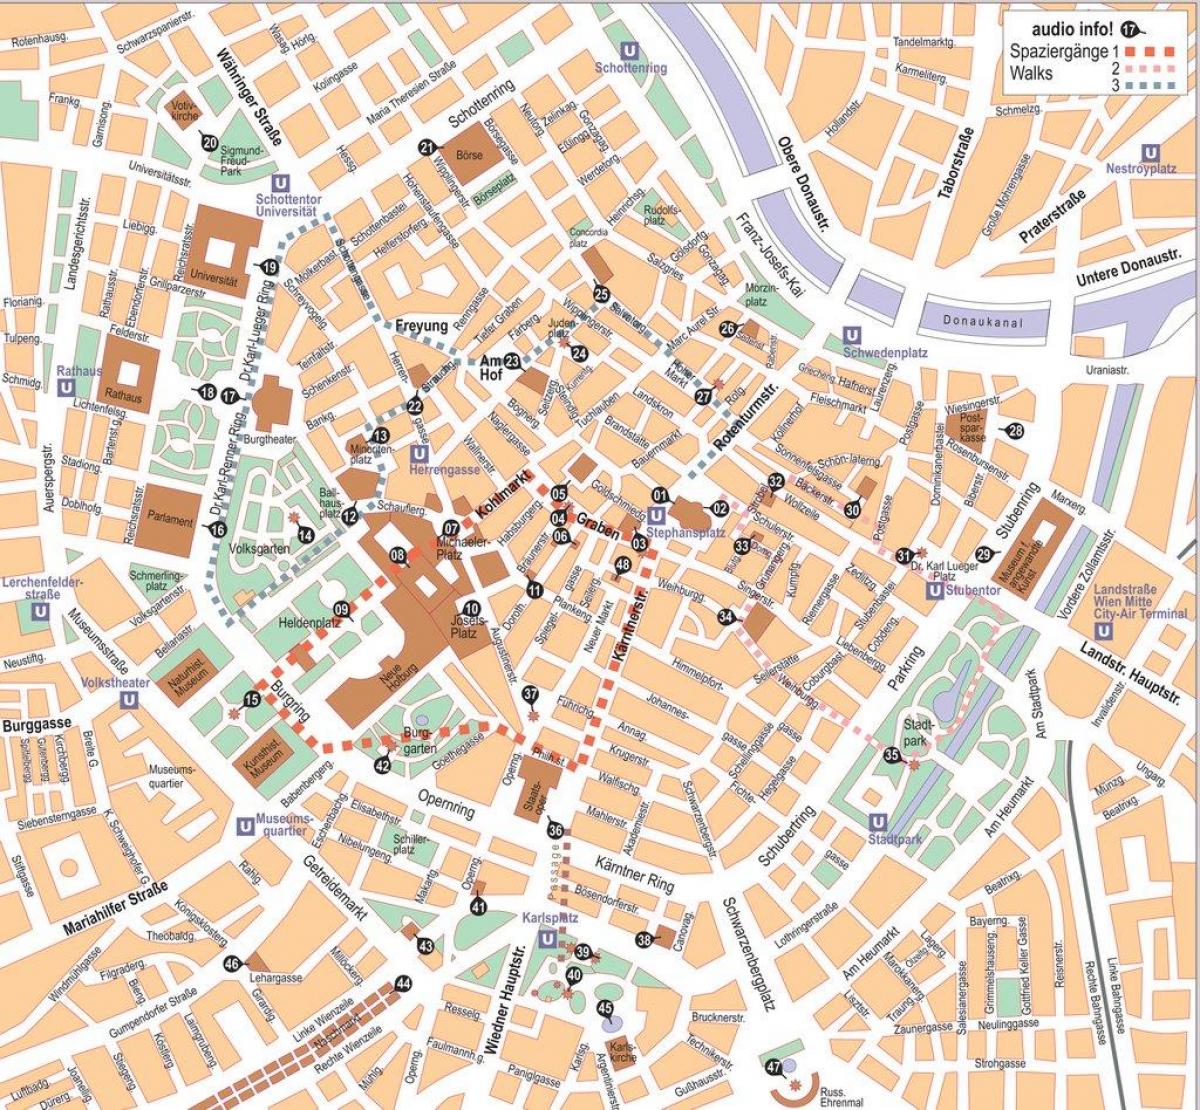 خريطة فيينا المدينة حاليا